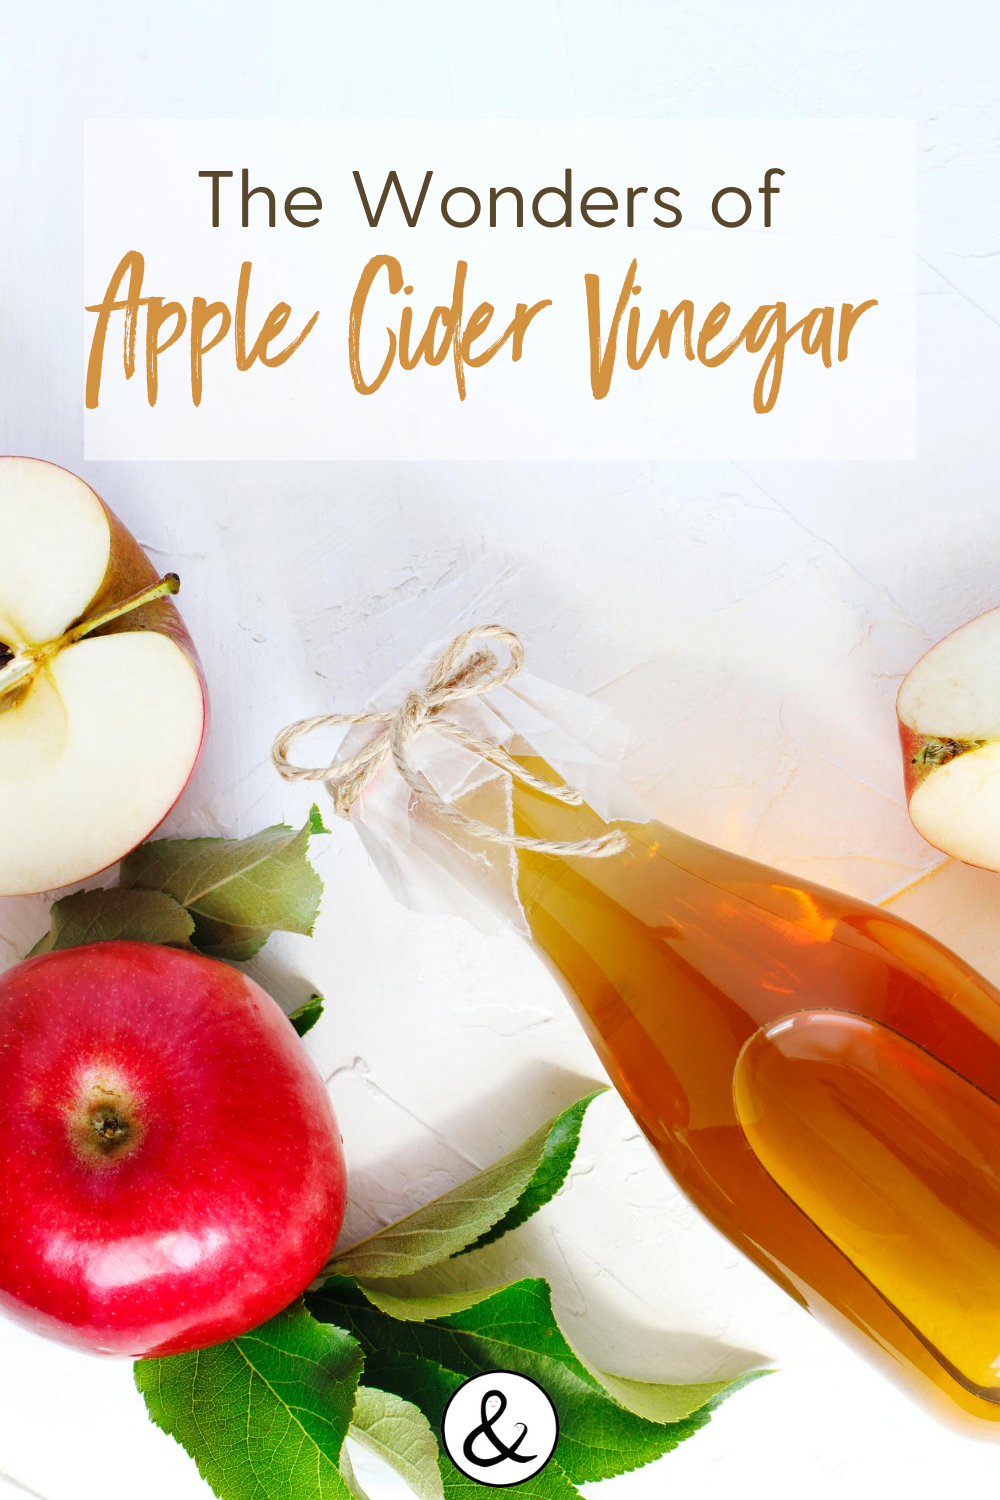 The Wonders of Apple Cider Vinegar